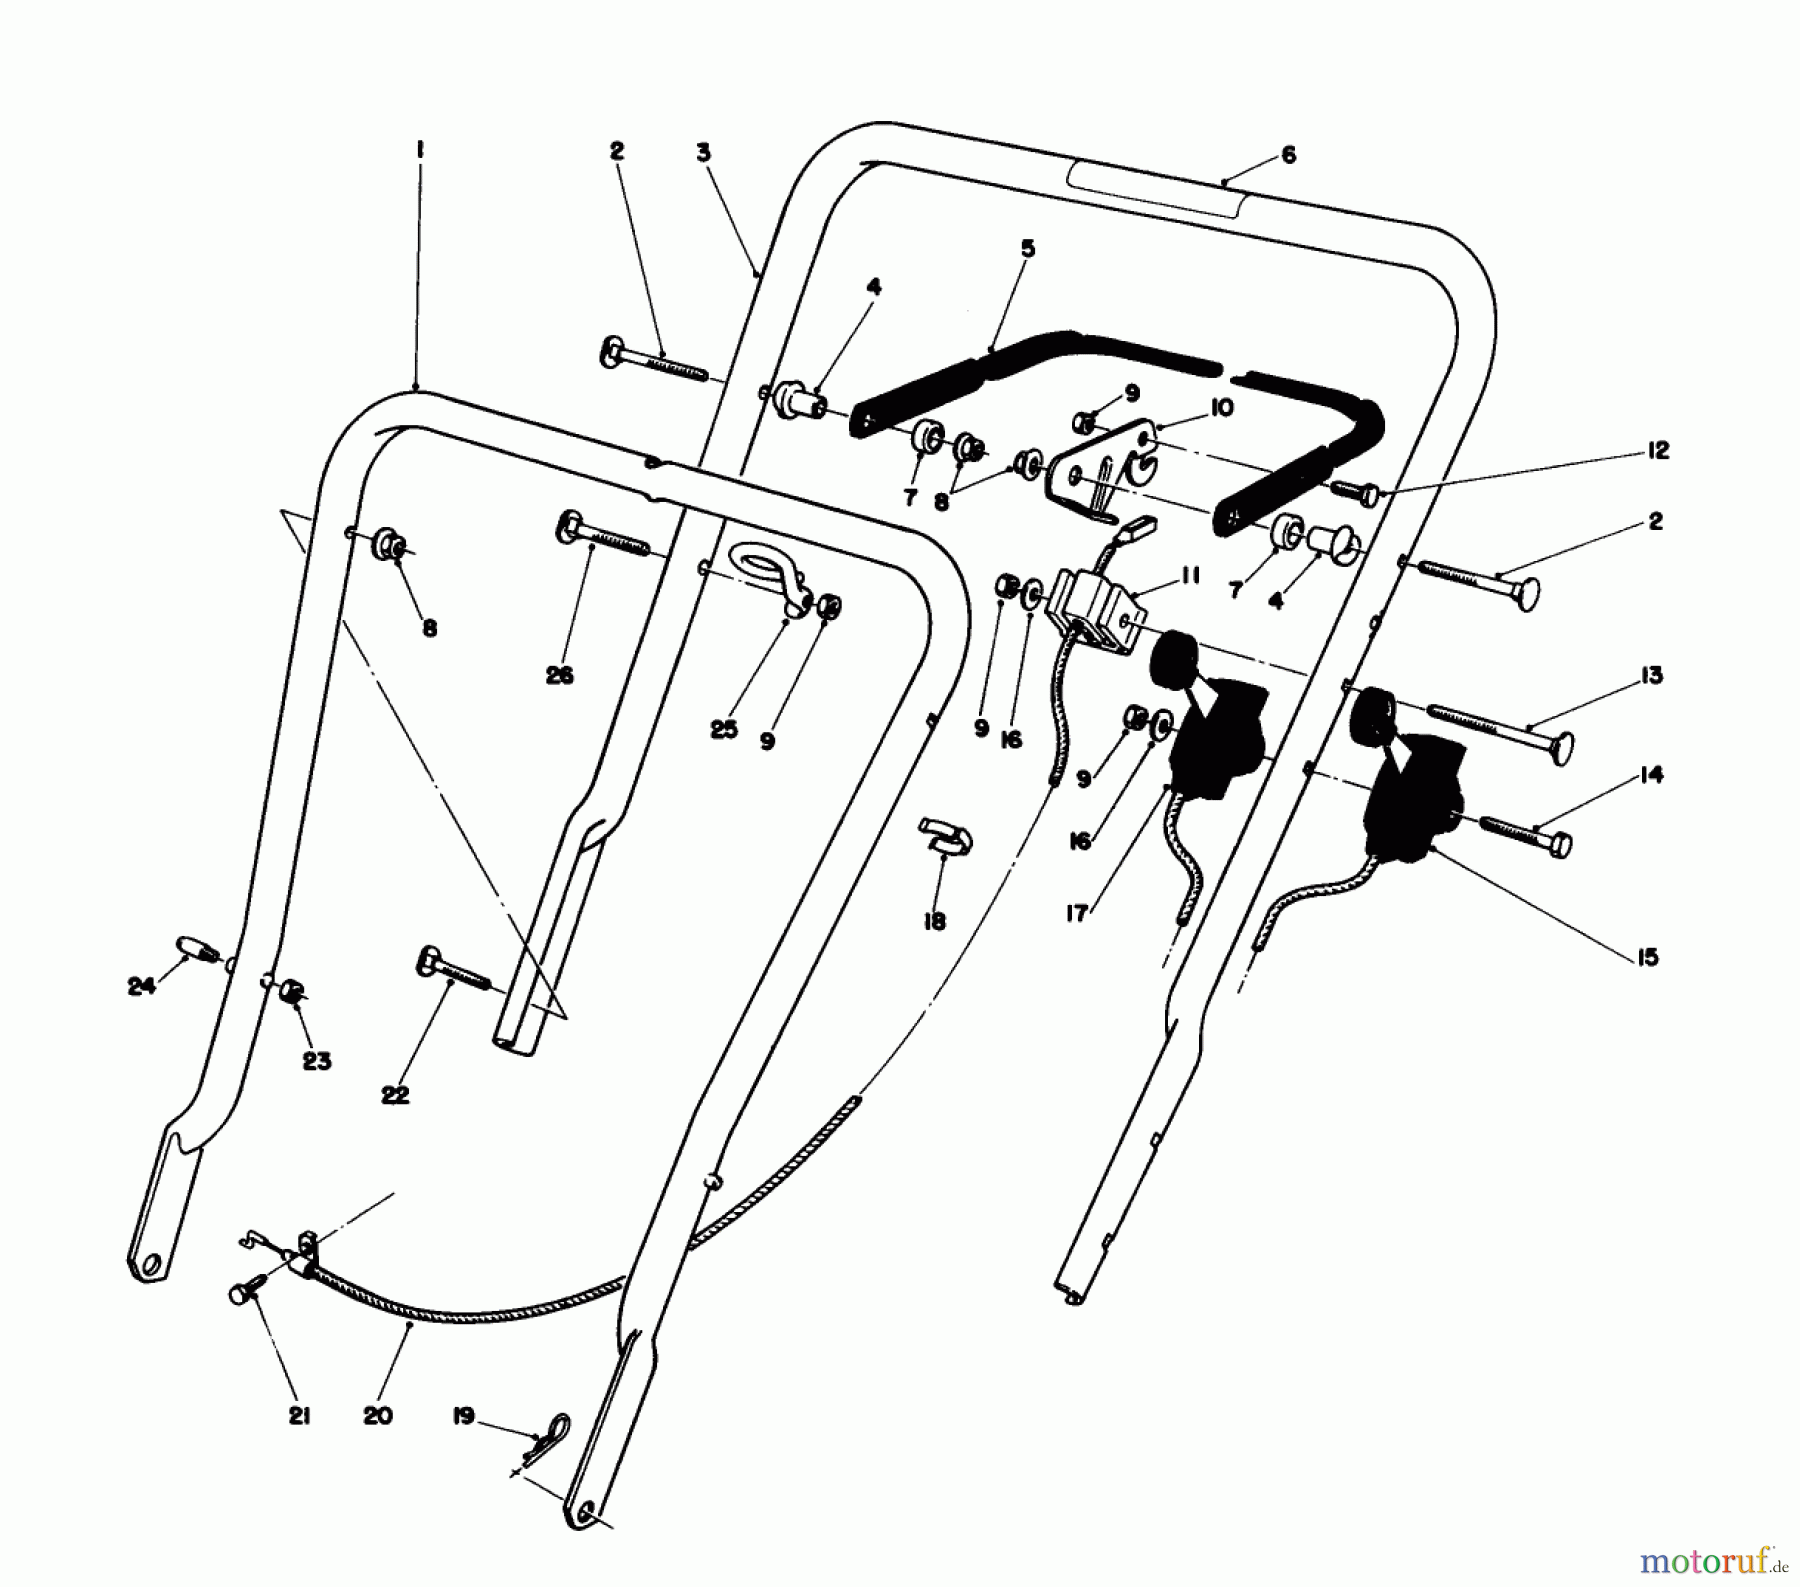  Toro Neu Mowers, Walk-Behind Seite 1 16775 - Toro Lawnmower, 1988 (8000001-8022965) HANDLE ASSEMBLY